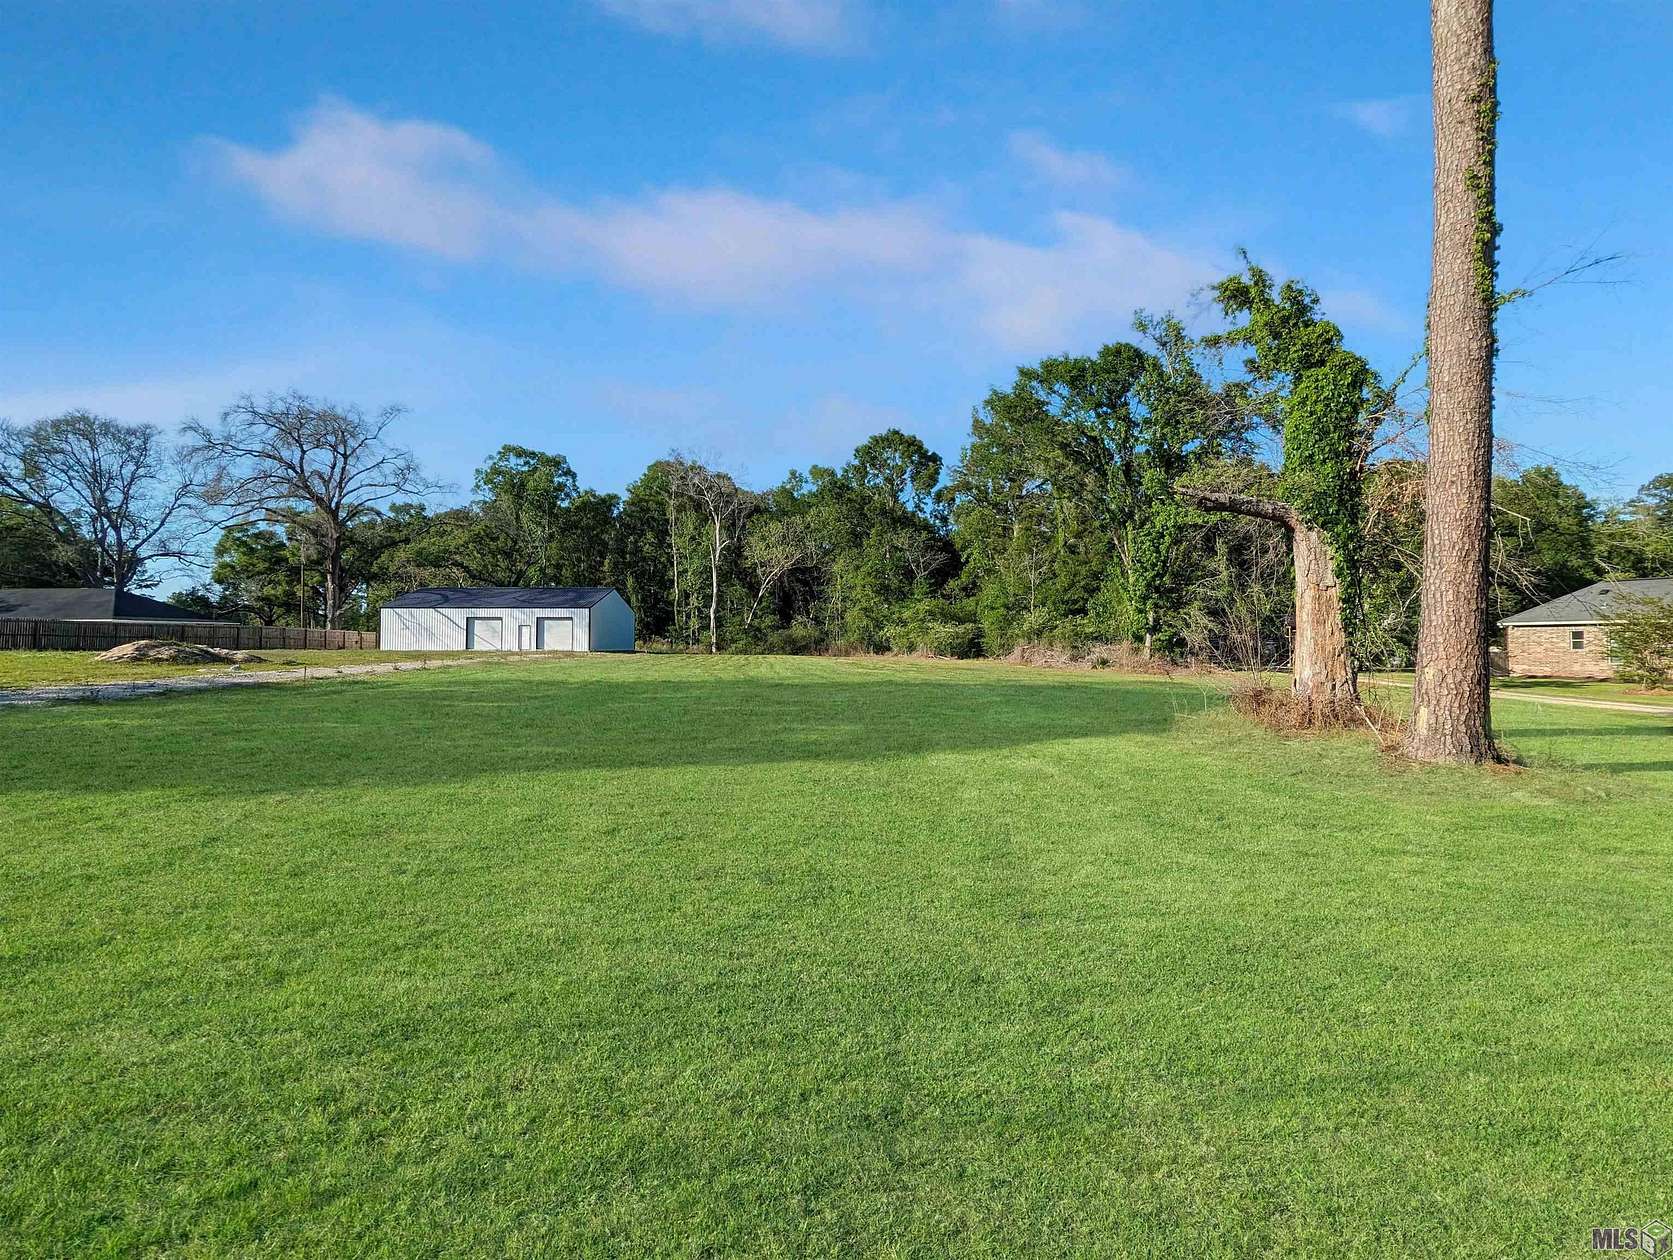 1.02 Acres of Residential Land for Sale in Denham Springs, Louisiana